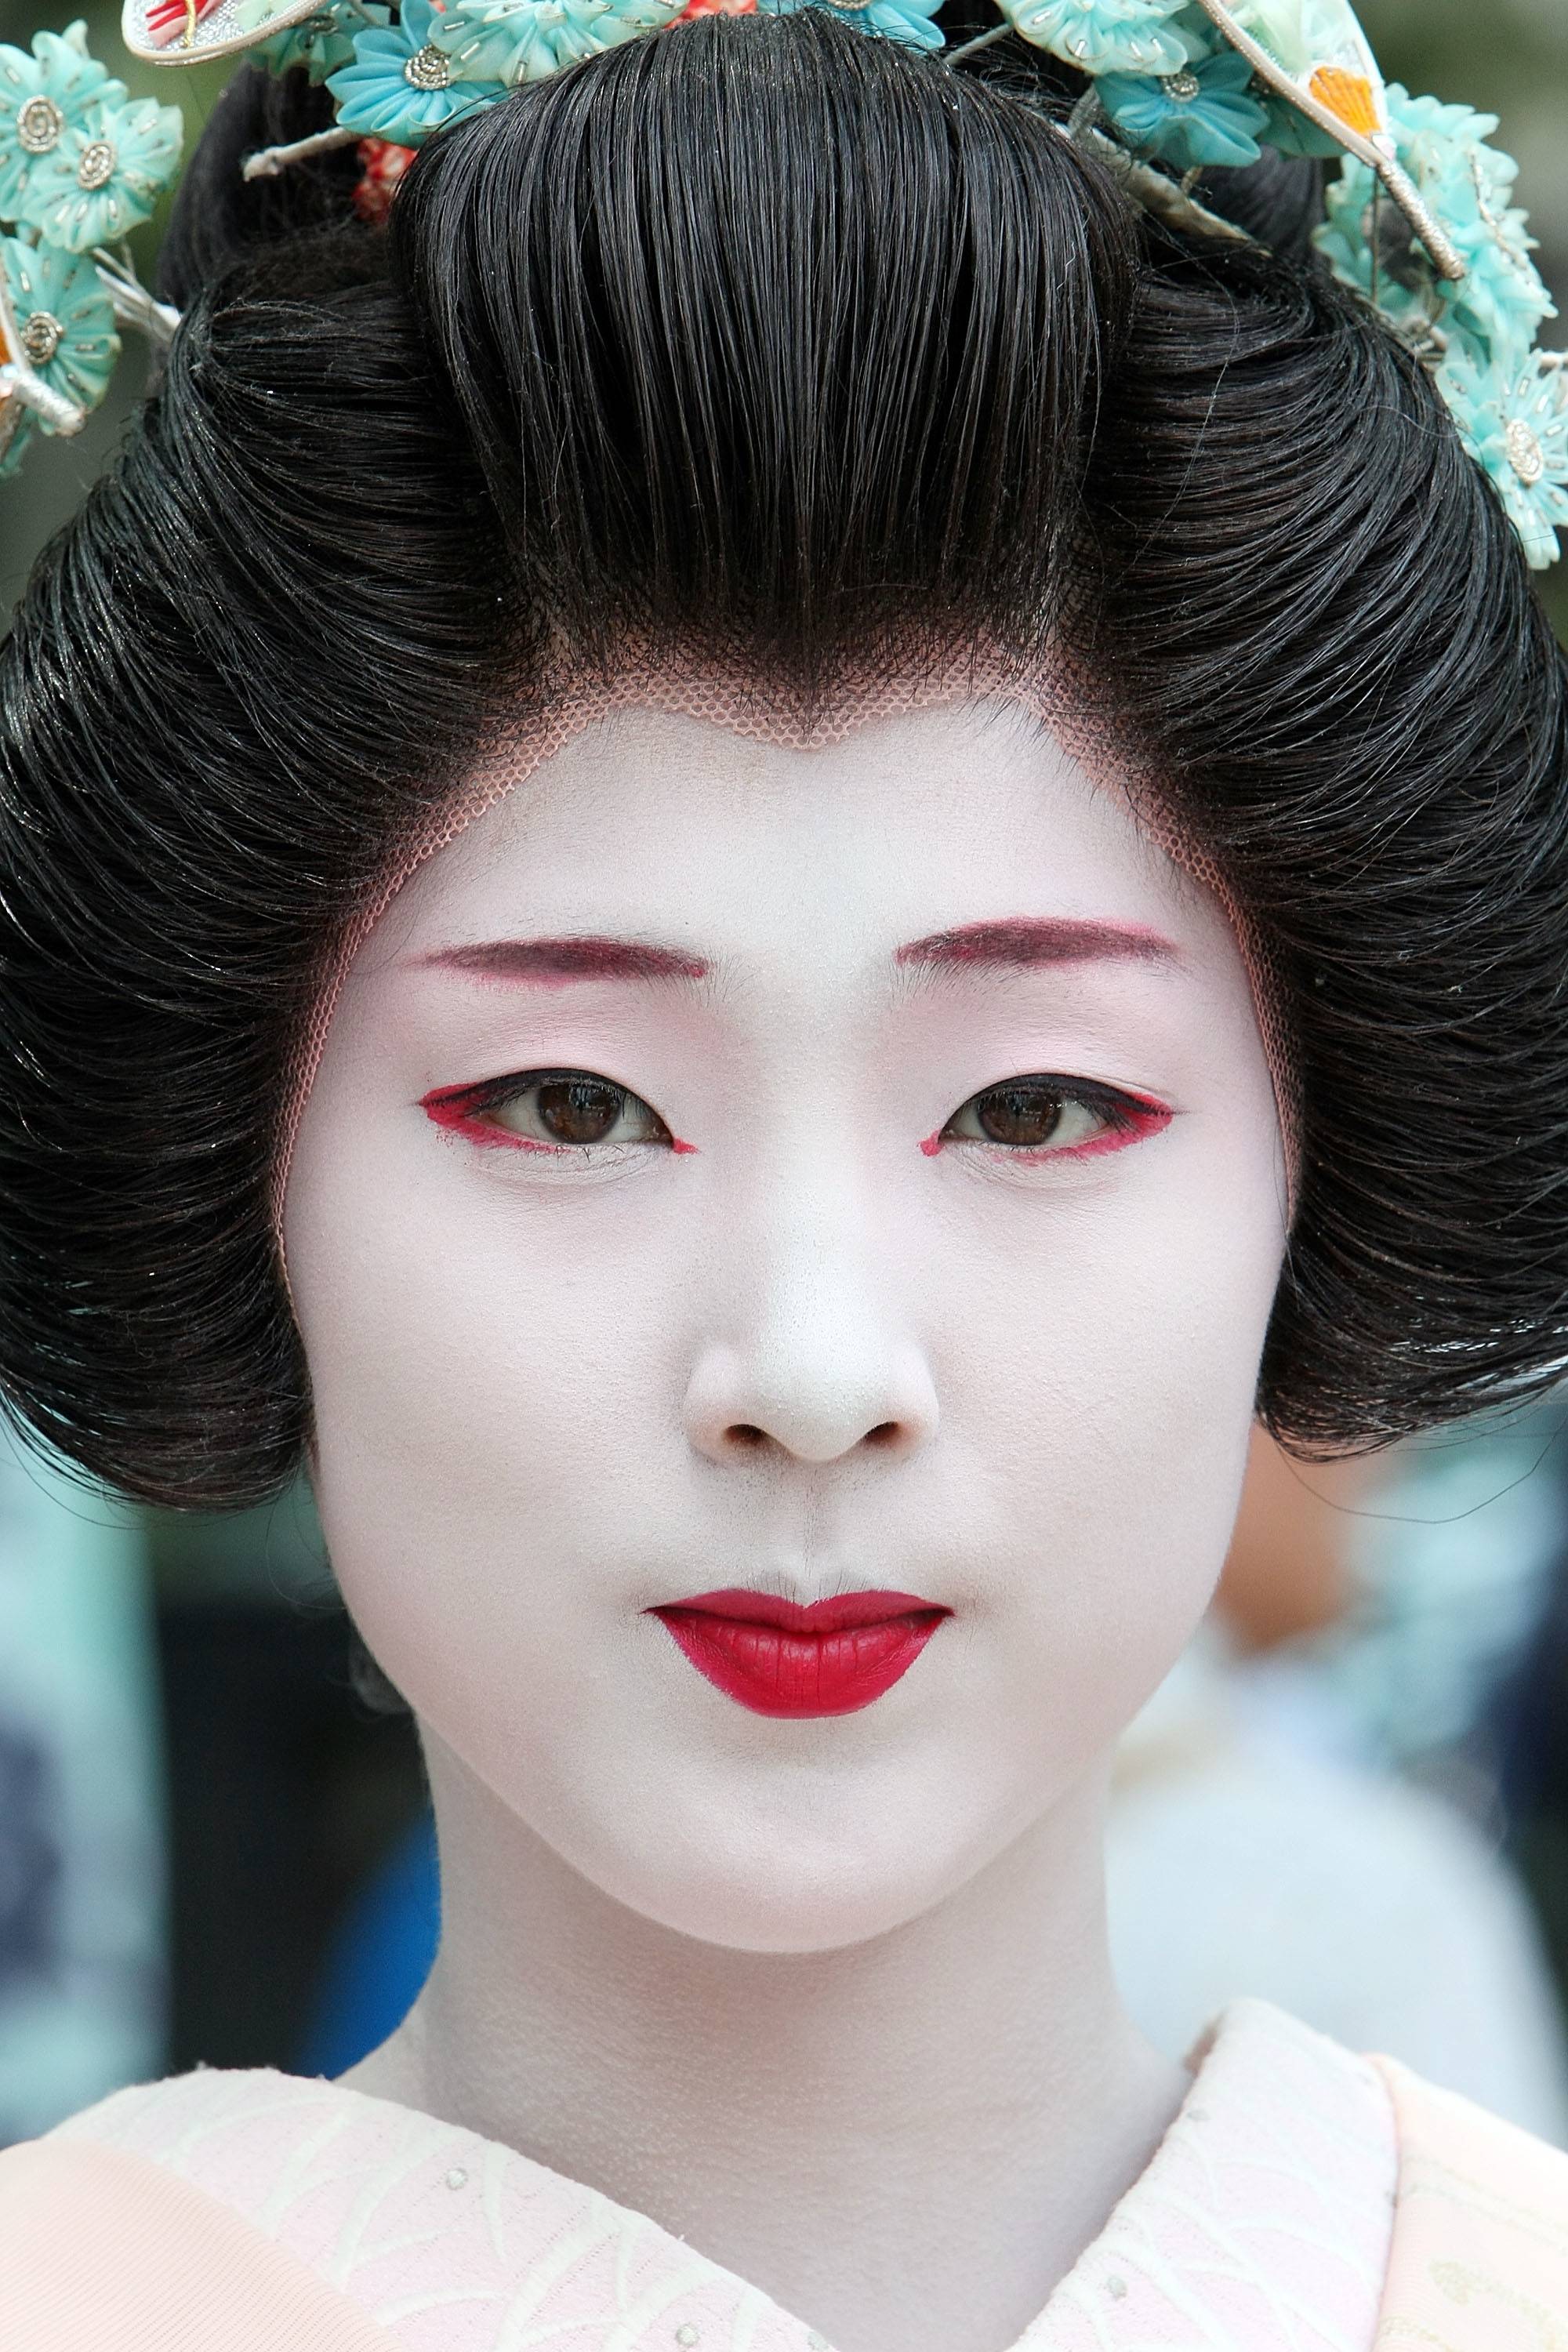 A Geisha Woman 15